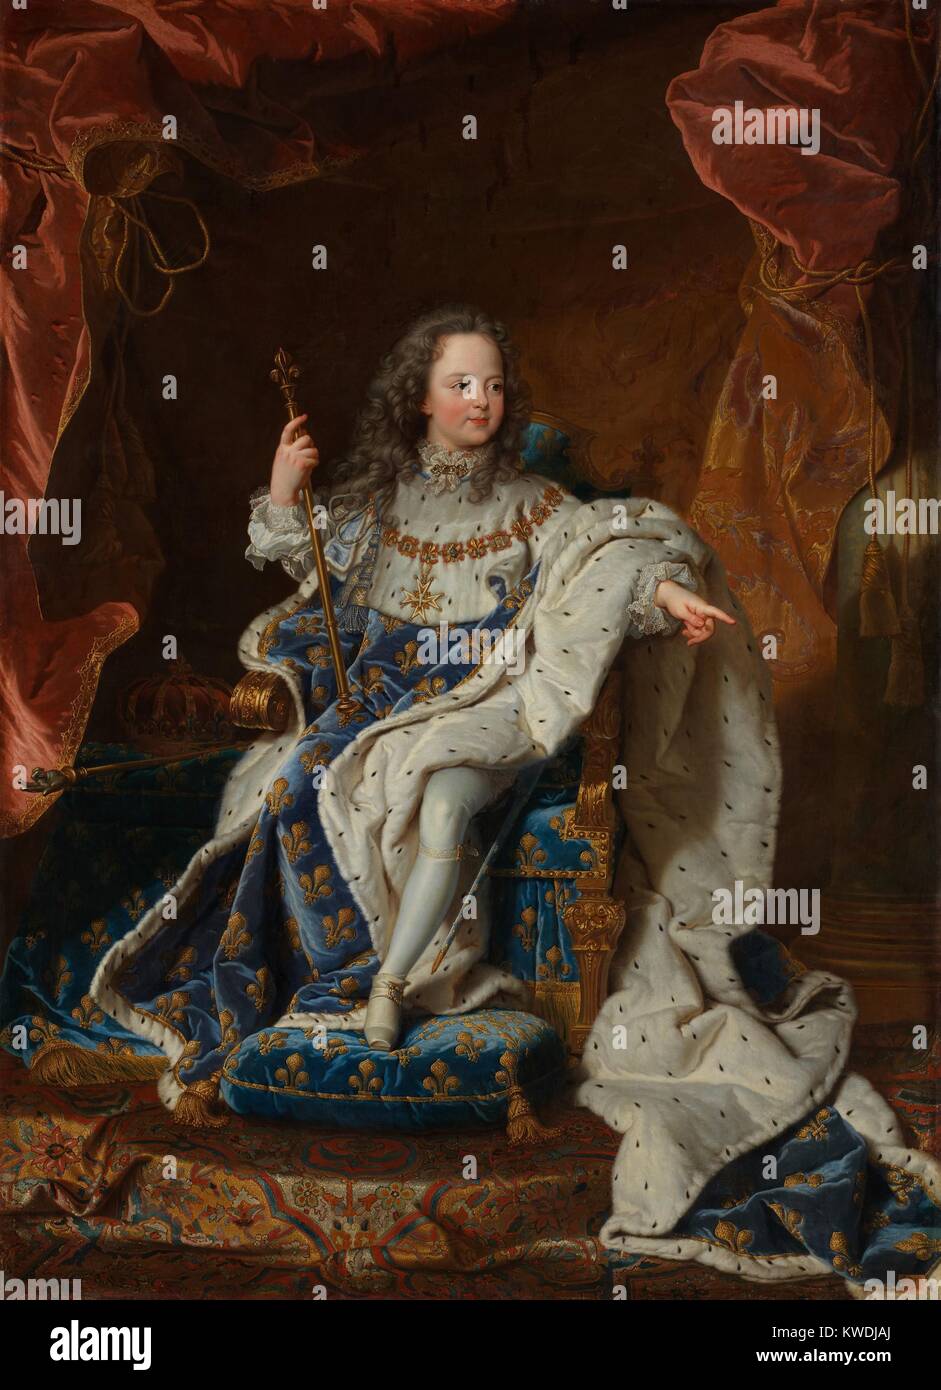 Luis XV, por Hyacinthe Rigaud, 1714, pintura barroca francesa, óleo sobre lienzo. Ascendió al trono a la edad de cinco años, sucediendo a su bisabuelo, y reinó desde 1714 hasta 1774 (BSLOC 2017 10 111) Foto de stock